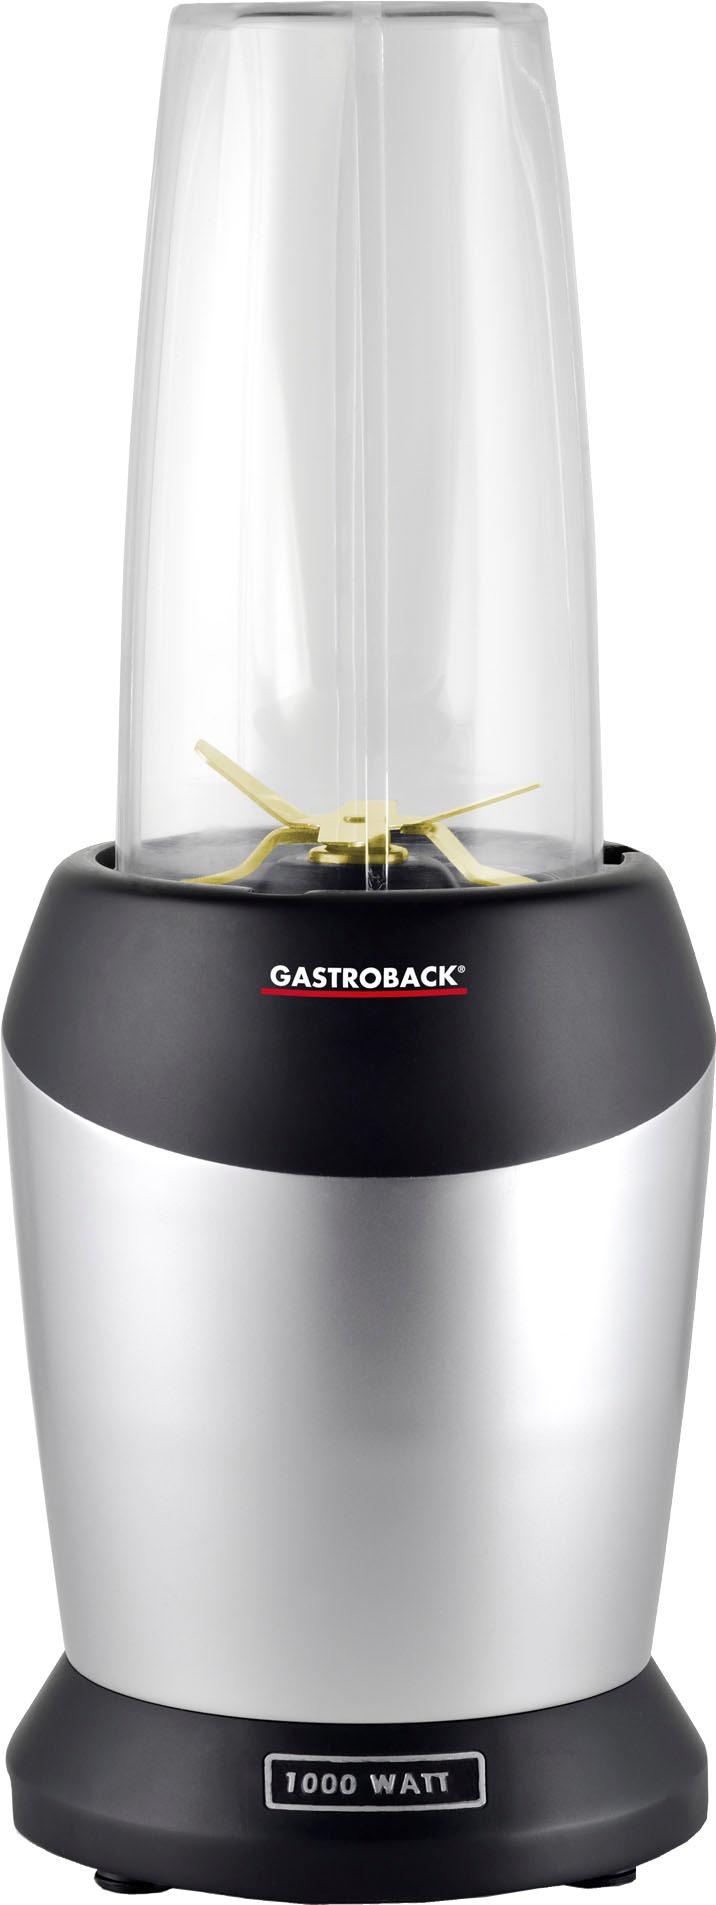 Gastroback Standmixer »41029 Design Micro Blender«, 1200 W